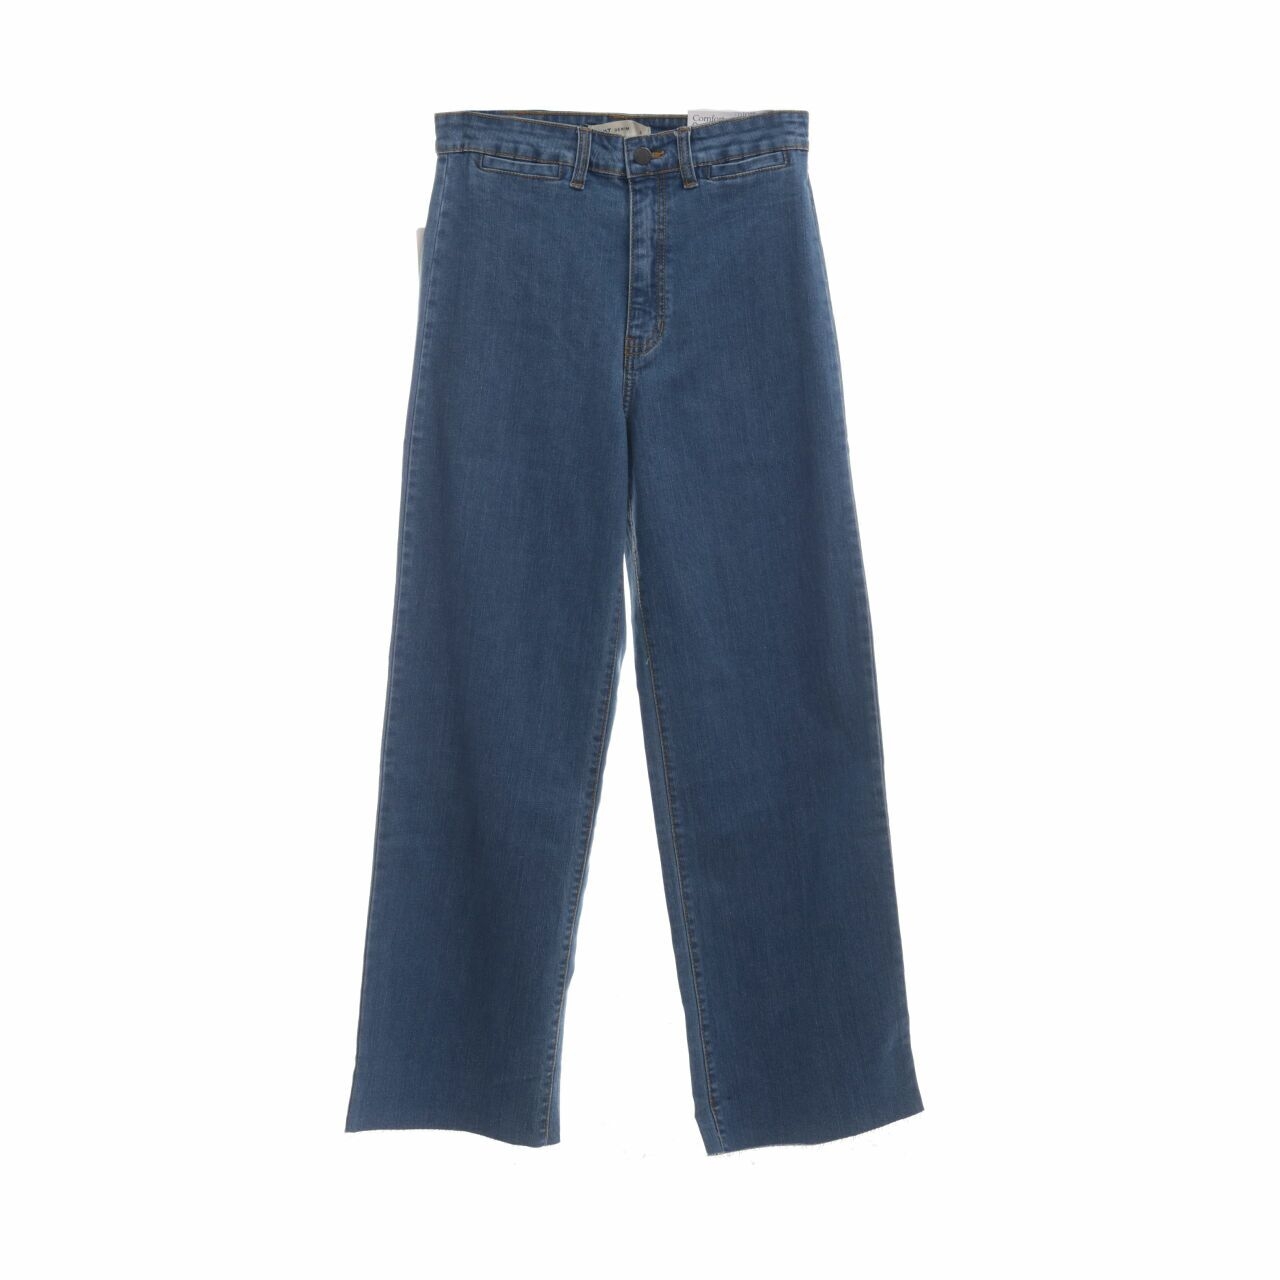 Dust Jeans Blue Long Pants